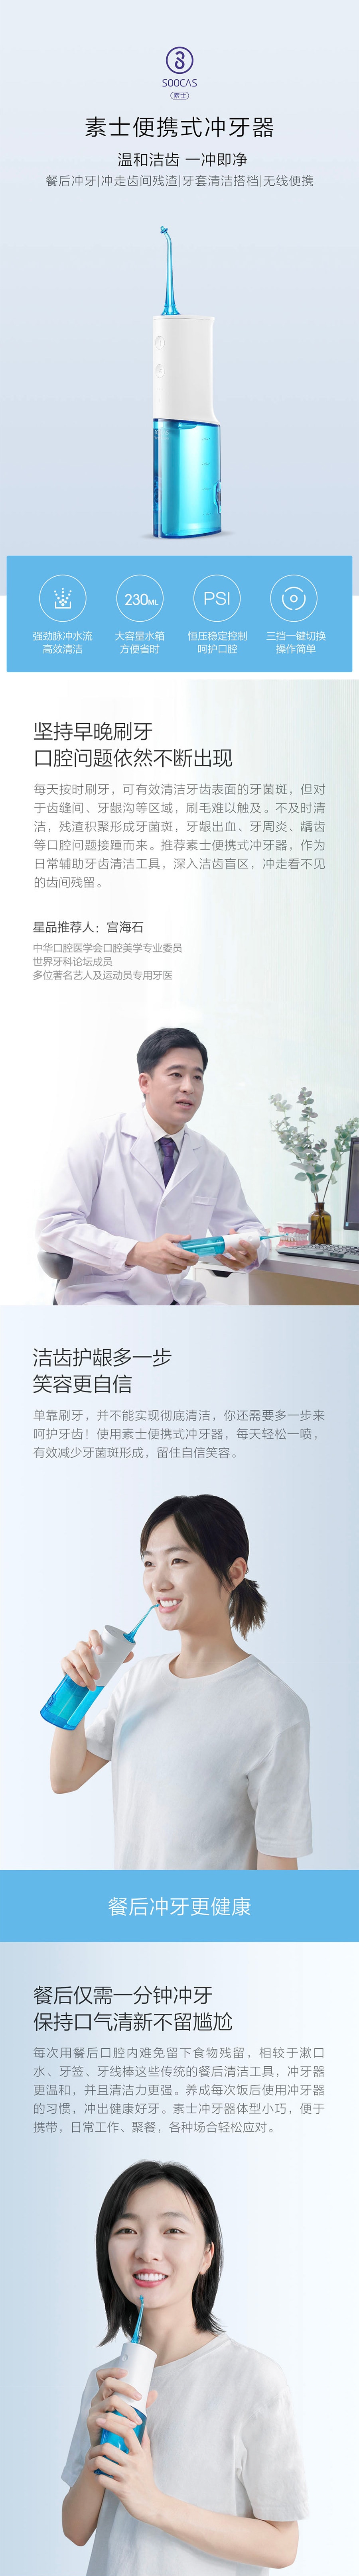 【中国直邮】小米有品素士便携式冲牙器 W3 1件/盒